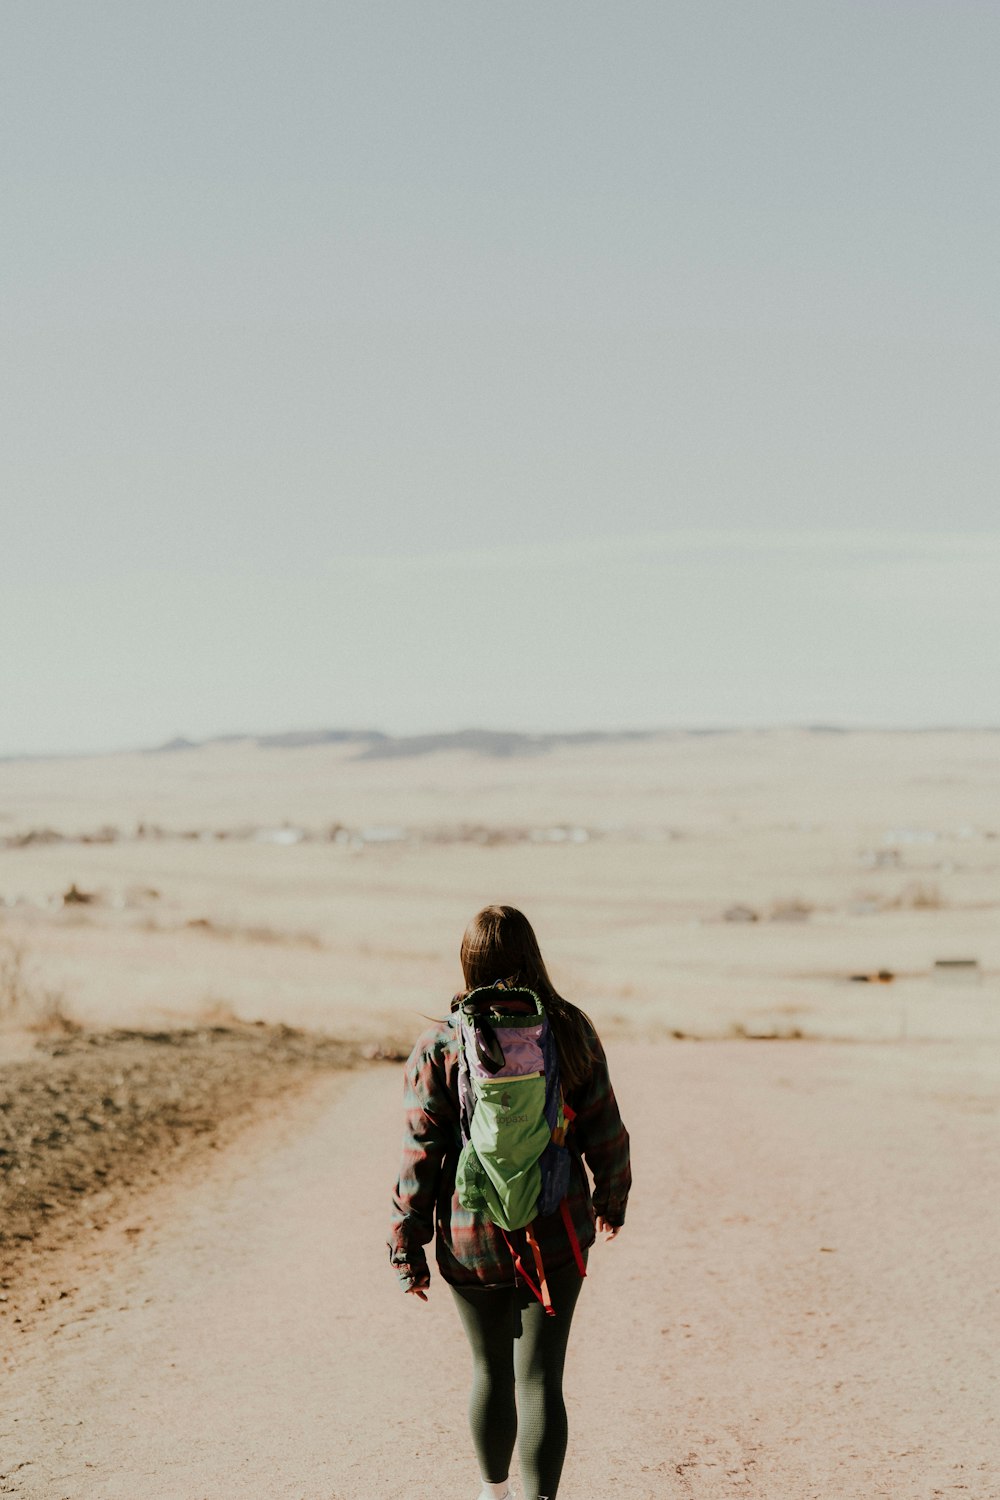 Una mujer caminando por un camino de tierra en el desierto